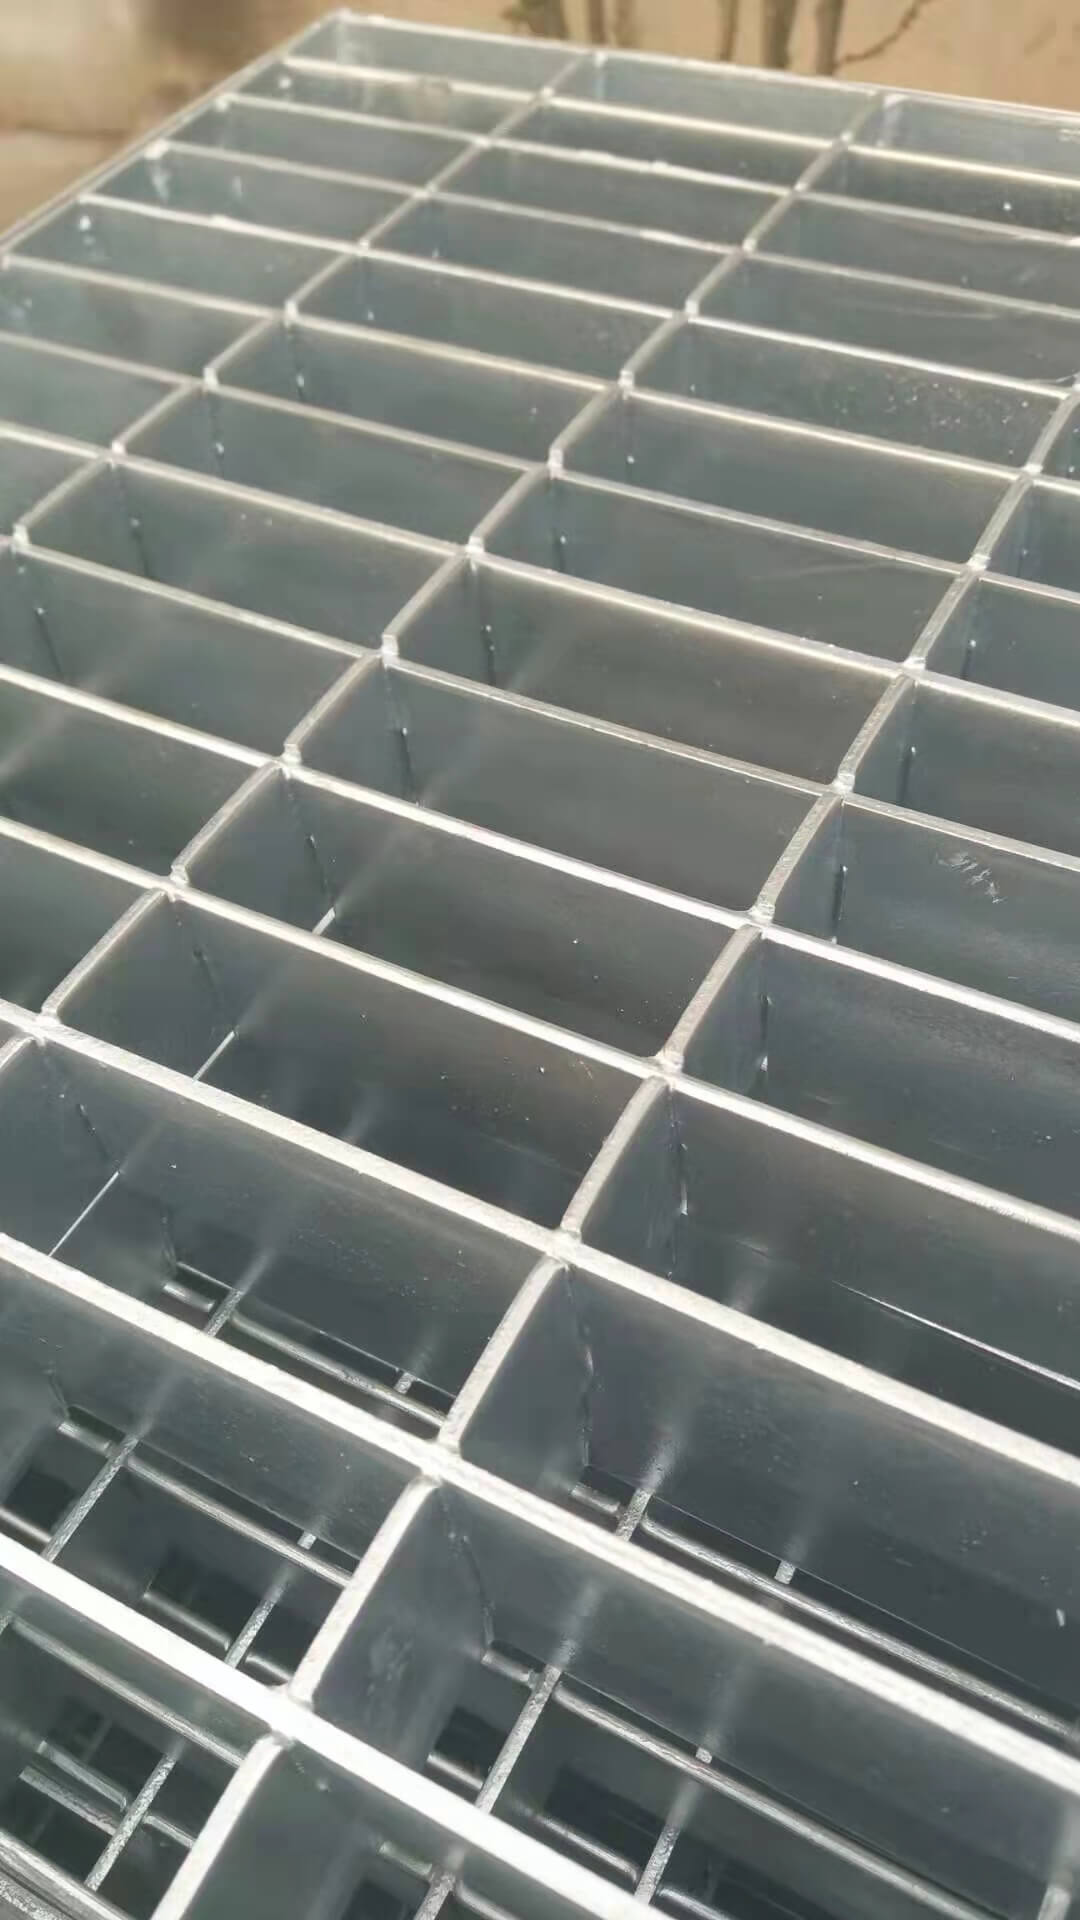 Steel Expanded Metal Bar Gratings